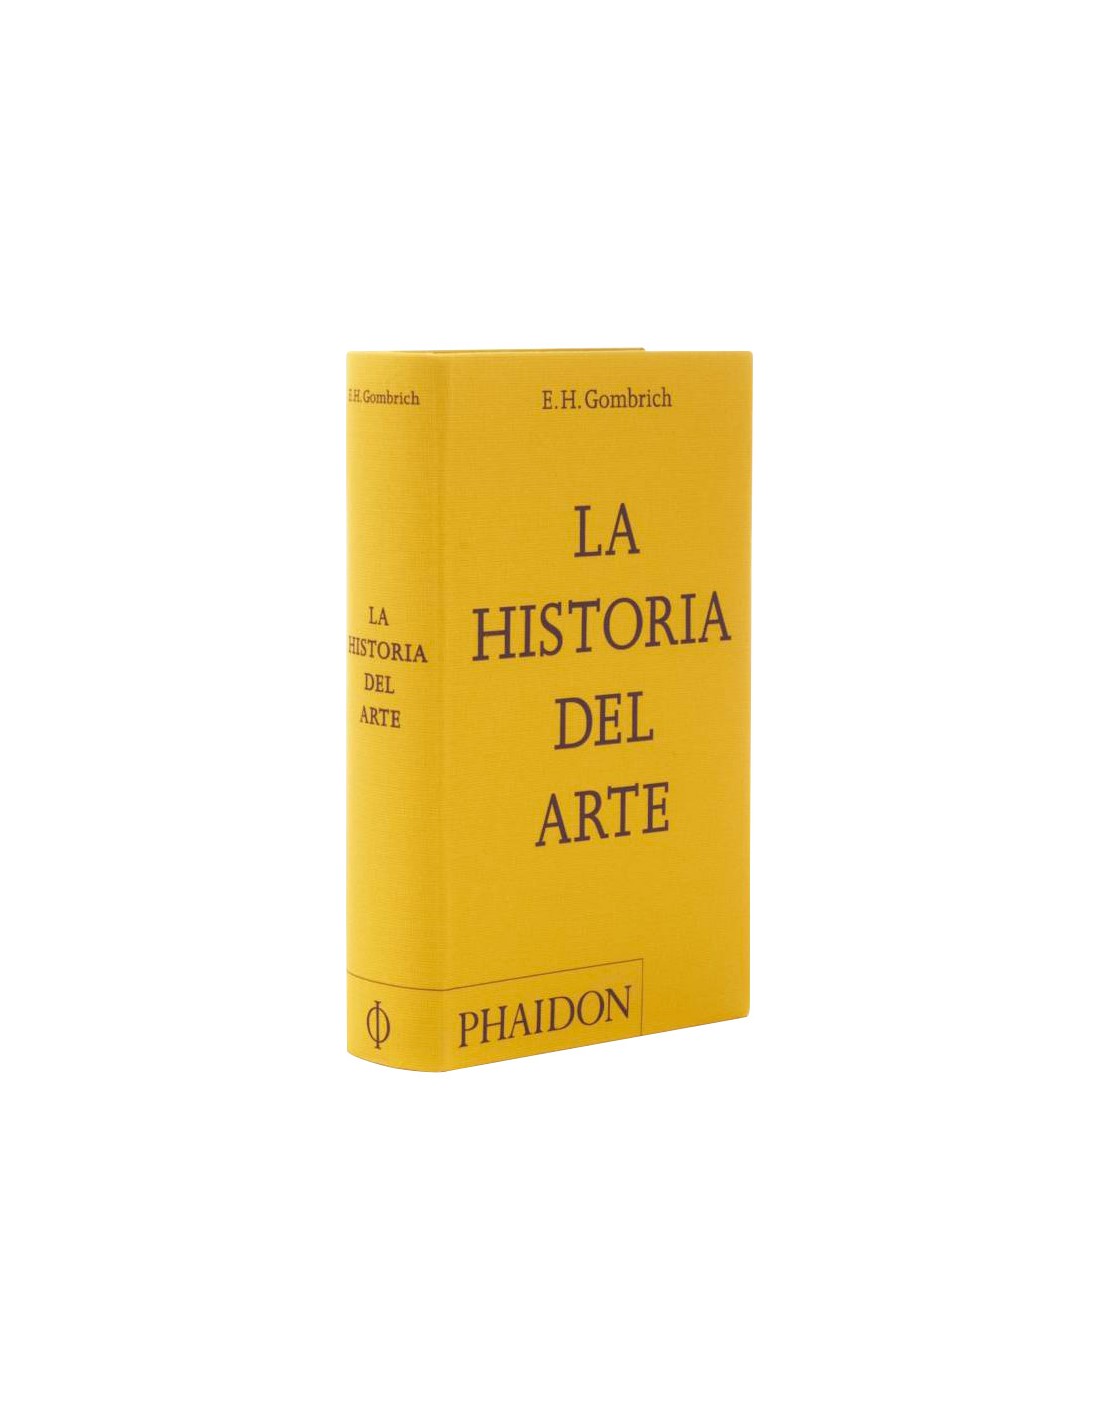 Phaidon publica una nueva edición de bolsillo de la famosa guía 'La Historia  del Arte' de Ernst Gombrich